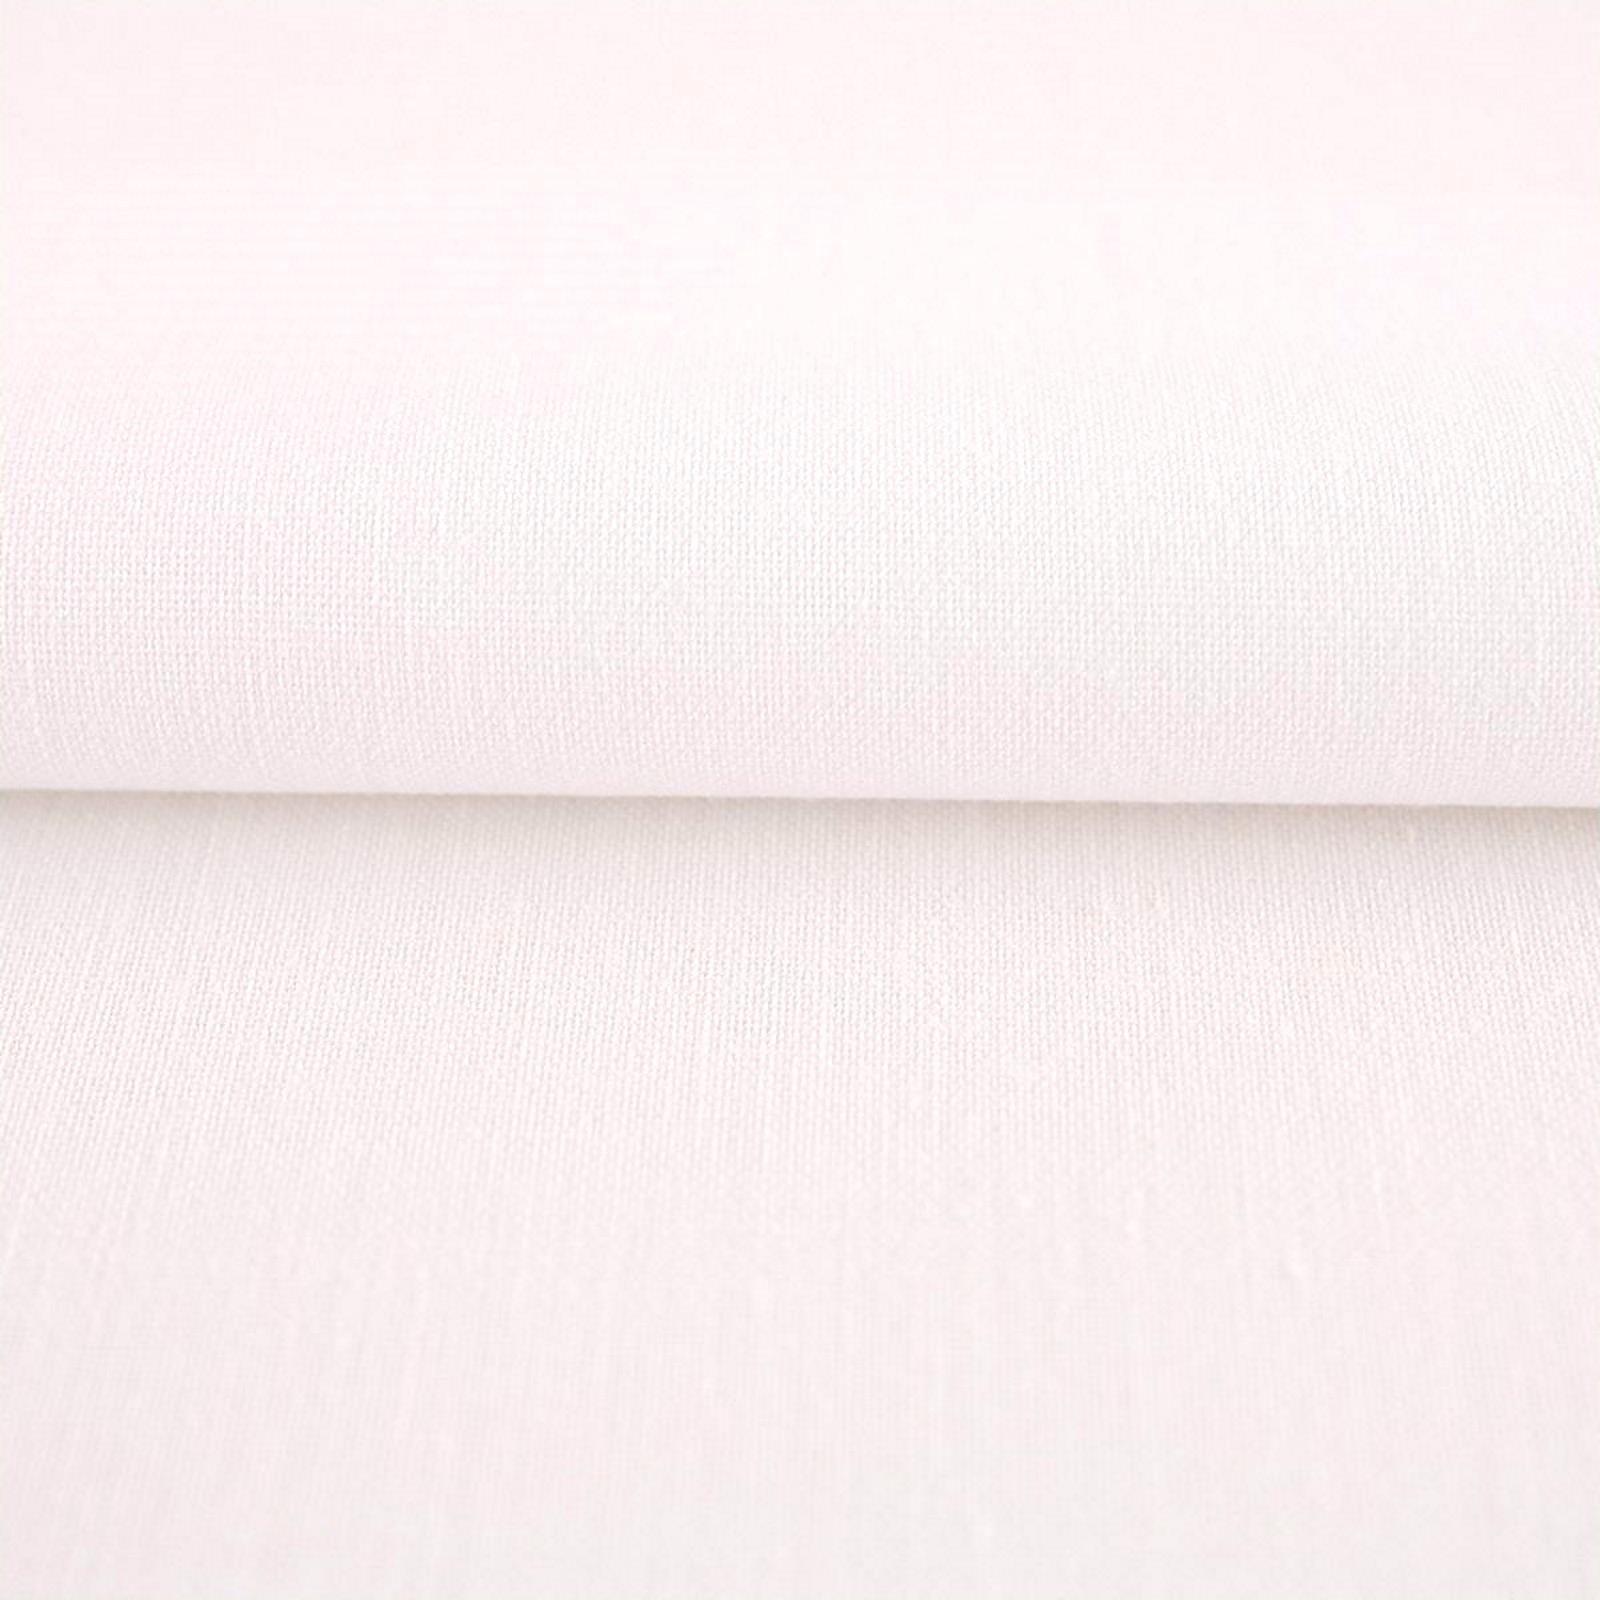 Sommerdecke Weiß Baumwolle Linon-100x200 cm